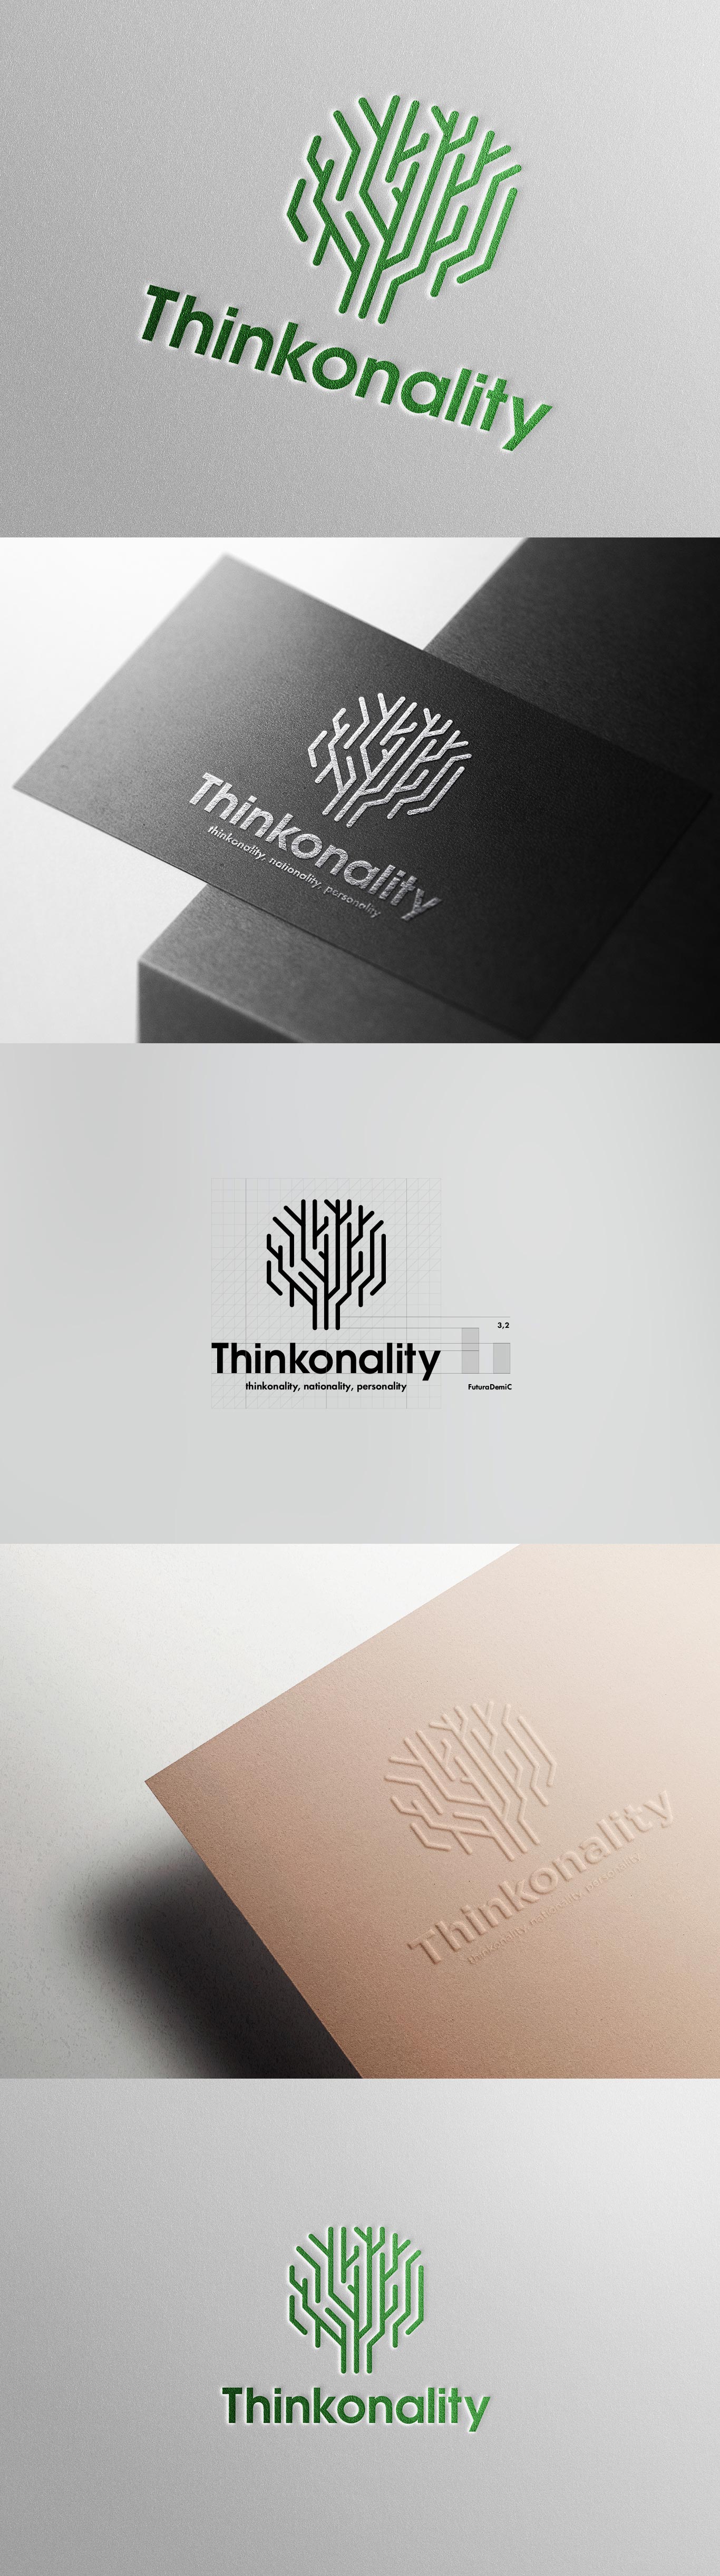 thinkonality